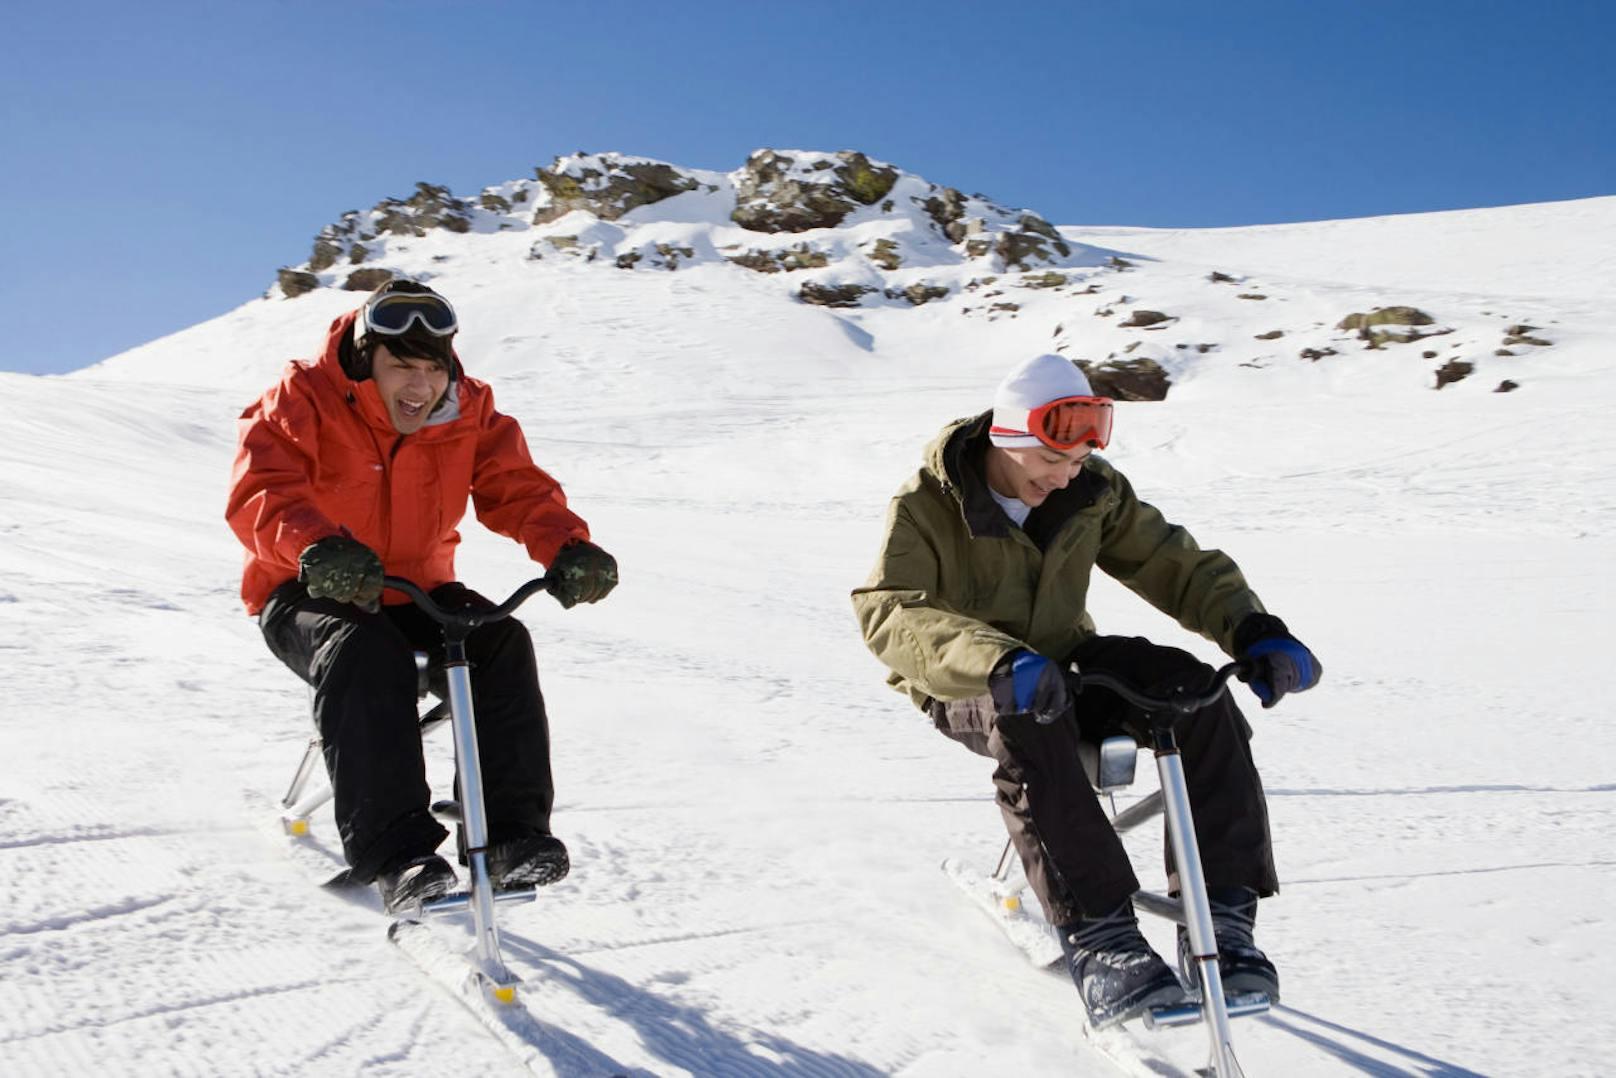 <b>5. Snow Biking</b>

Anstelle von Rädern verfügen Snow BIkes über zwei Skier. Eine Sportart, die sogar für Nichtskifahrer geeignet ist. Durch den niedrigen Schwerpunkt des Snow Bikes werden die Knie, Wirbelsäule und Gelenke des Fahrers geschont.